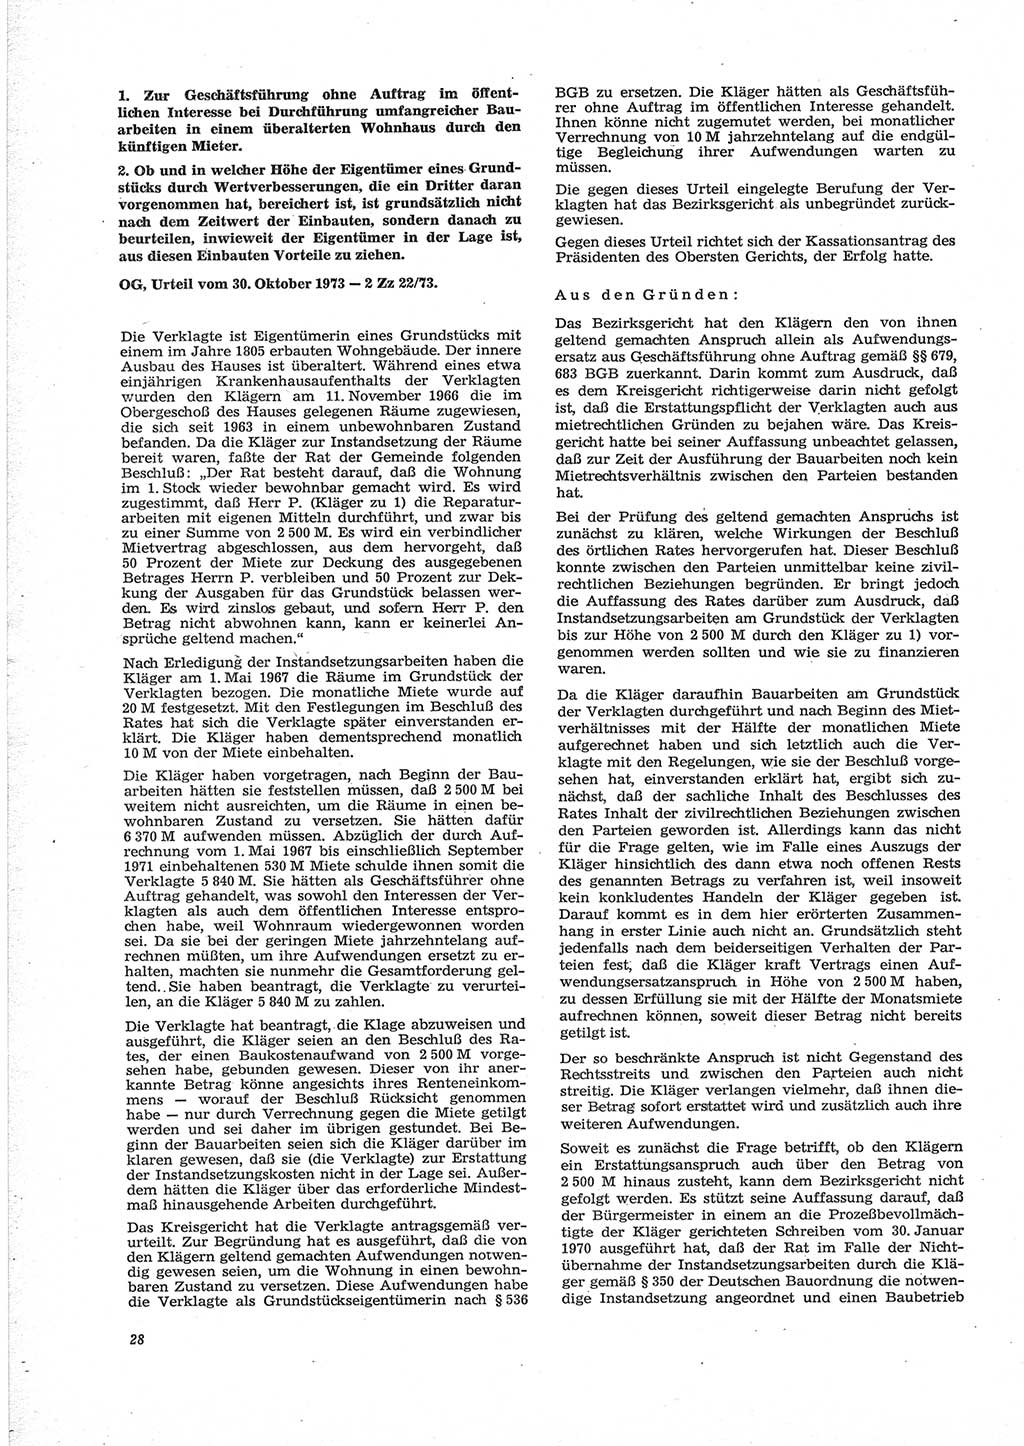 Neue Justiz (NJ), Zeitschrift für Recht und Rechtswissenschaft [Deutsche Demokratische Republik (DDR)], 28. Jahrgang 1974, Seite 28 (NJ DDR 1974, S. 28)